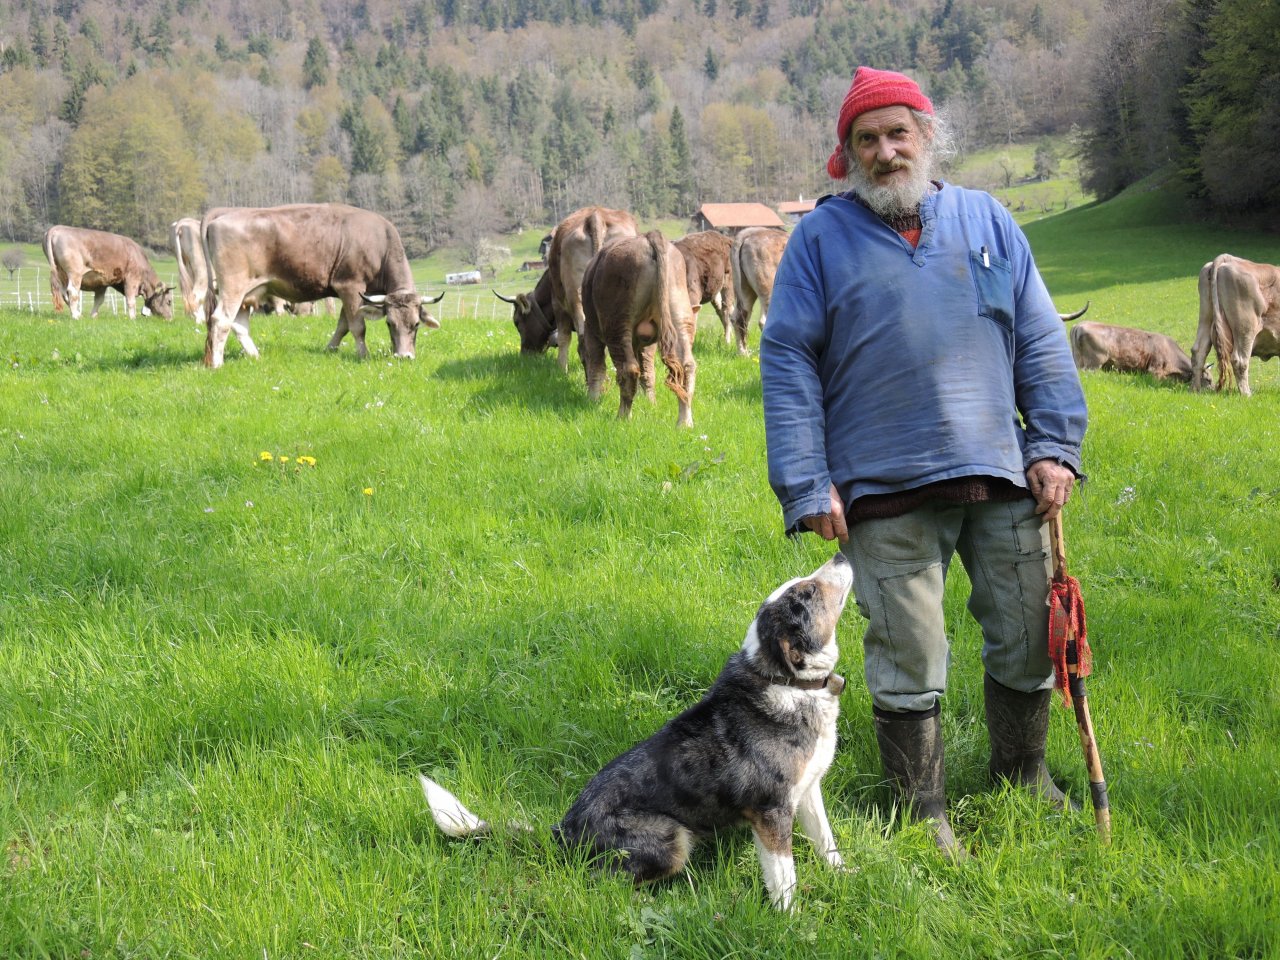 瑞士老農提案讓牛自然長角 交付公投遭否決